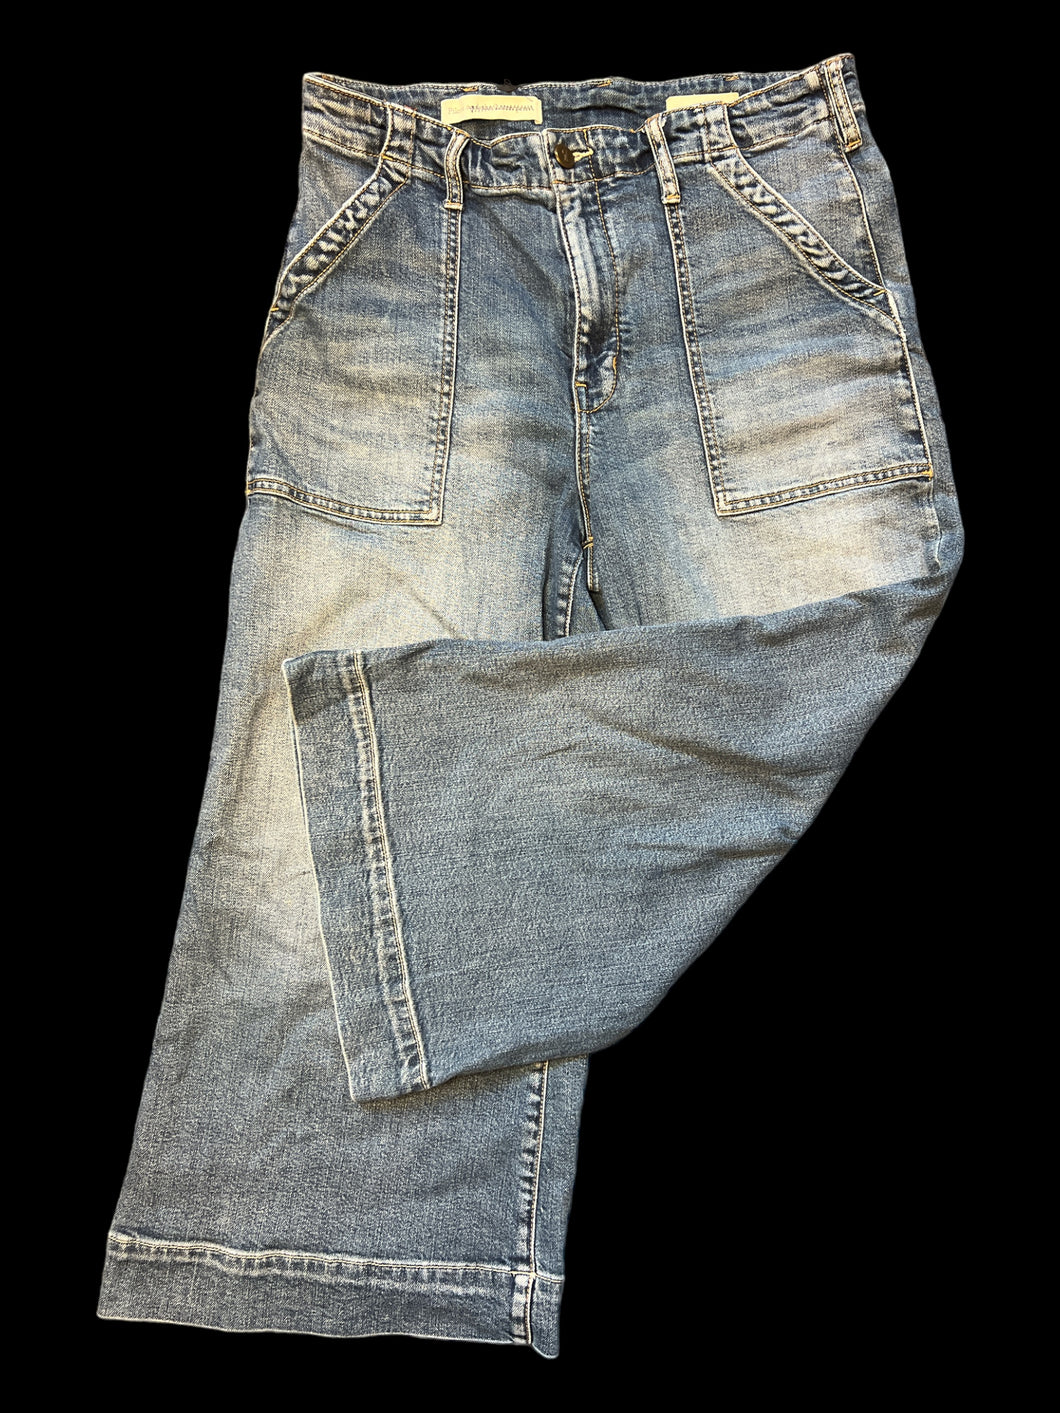 M Blue denim high waist wide leg capris w/ pockets, belt loops, & button/zipper closure